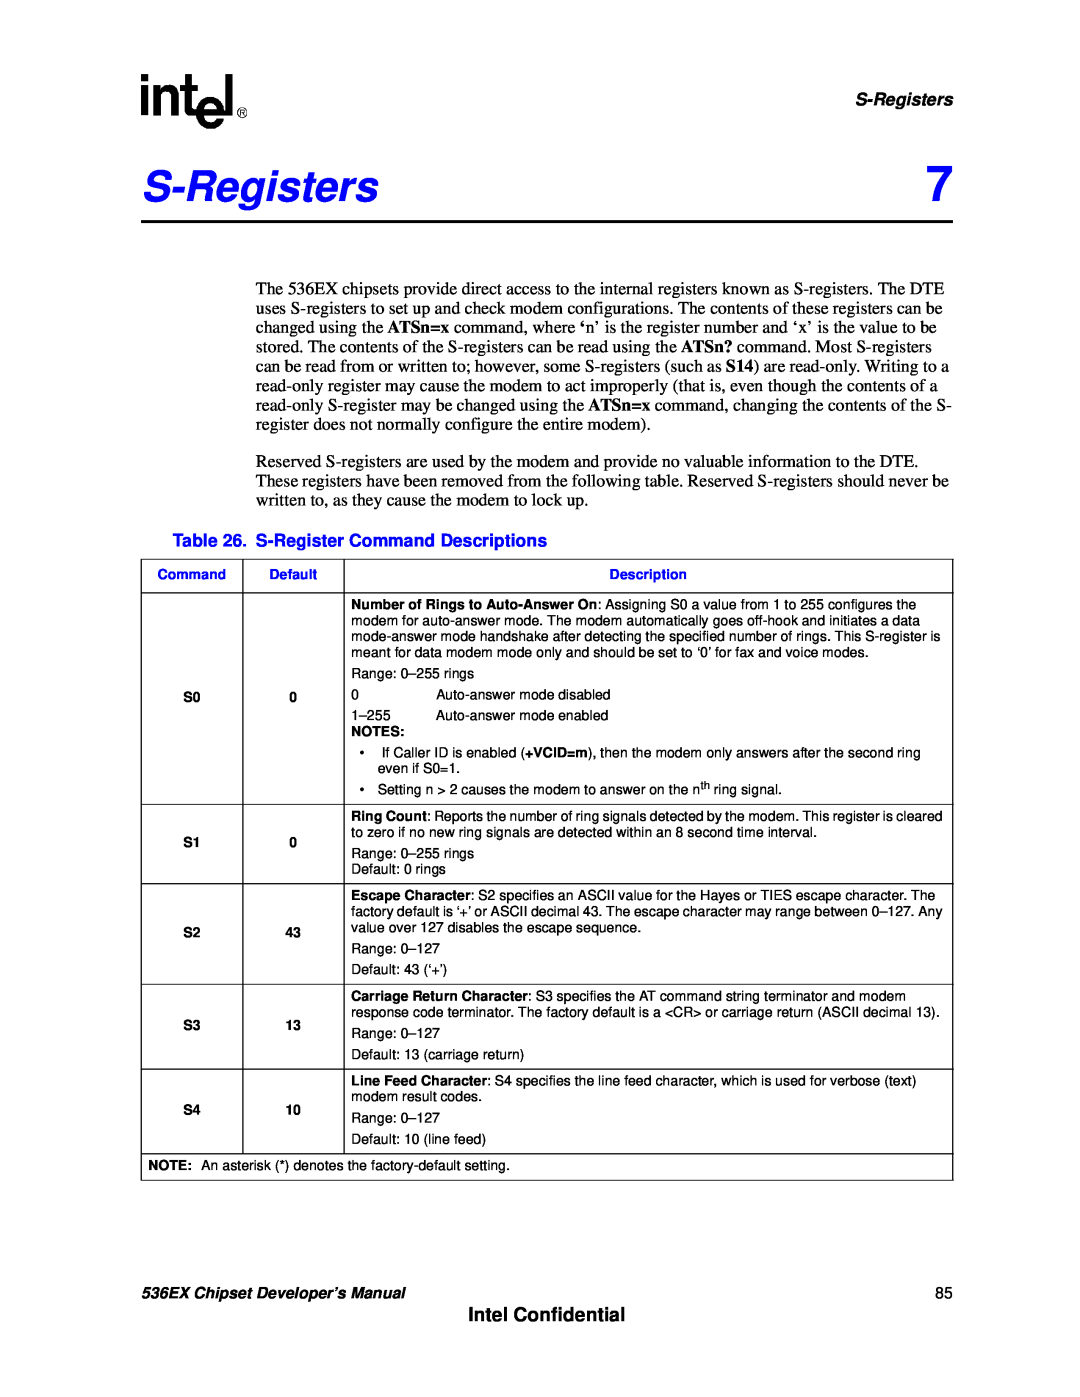 Intel 537EX manual S-Registers, Intel Confidential, S-RegisterCommand Descriptions 